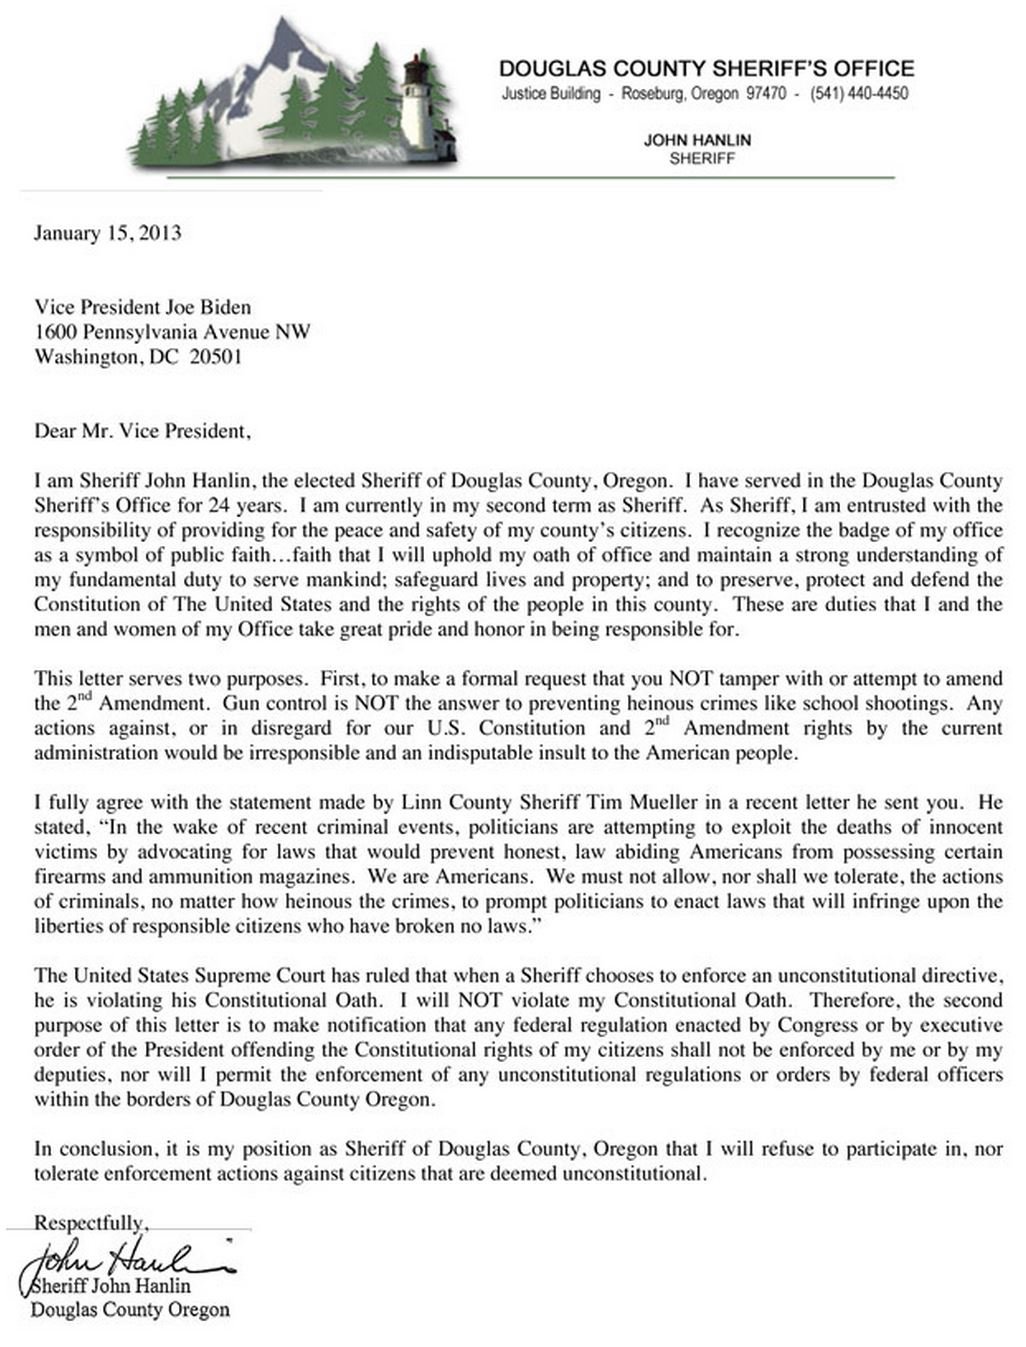 John Hanlin letter to Vice President Biden